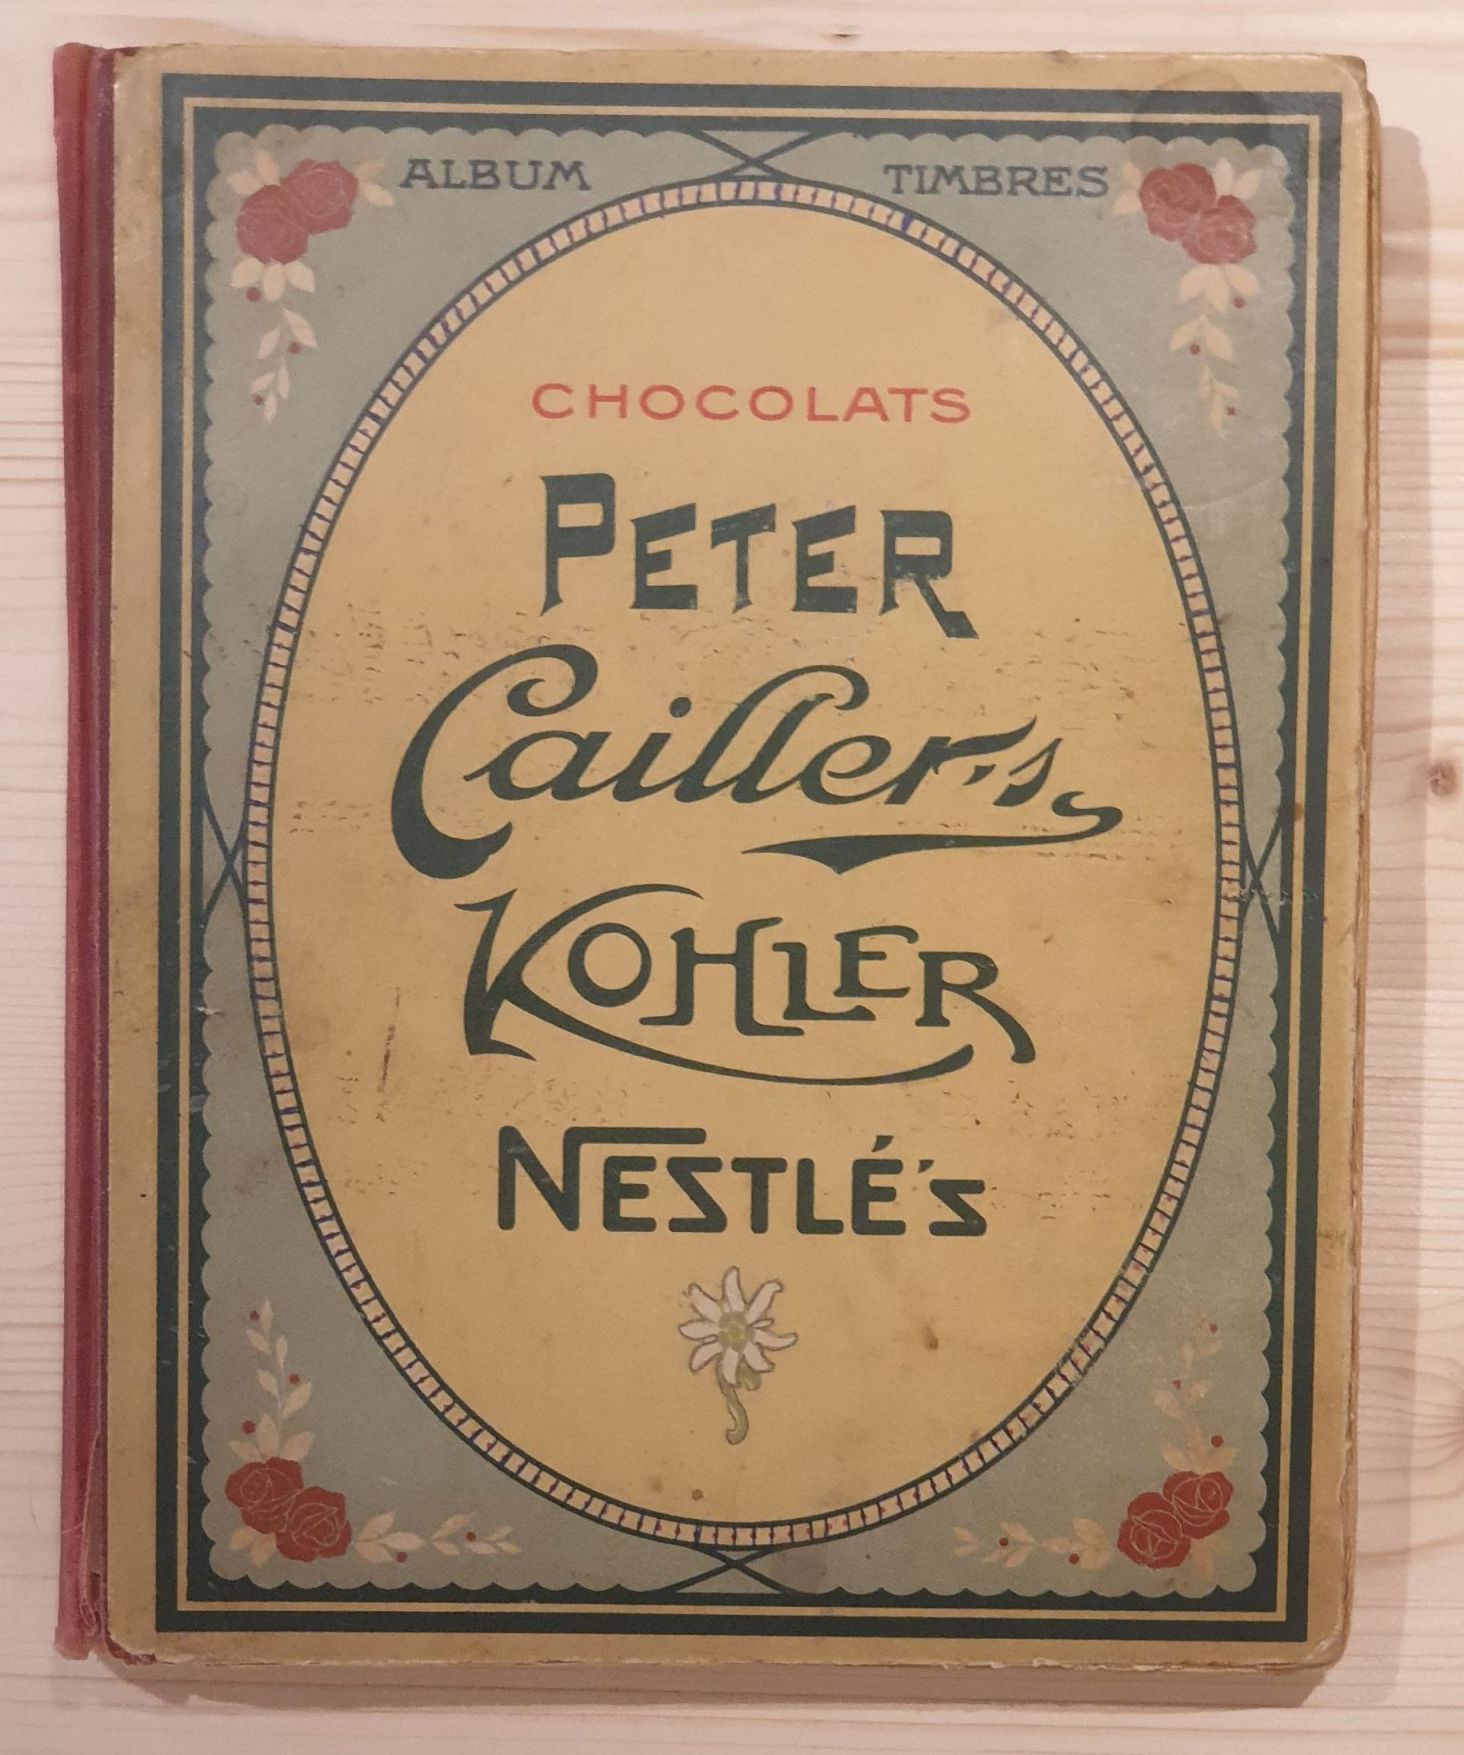 N.N.:  Chocolats Peter Cailler`s Kohler Nestle`s Album. Album mit Klebebildern. 